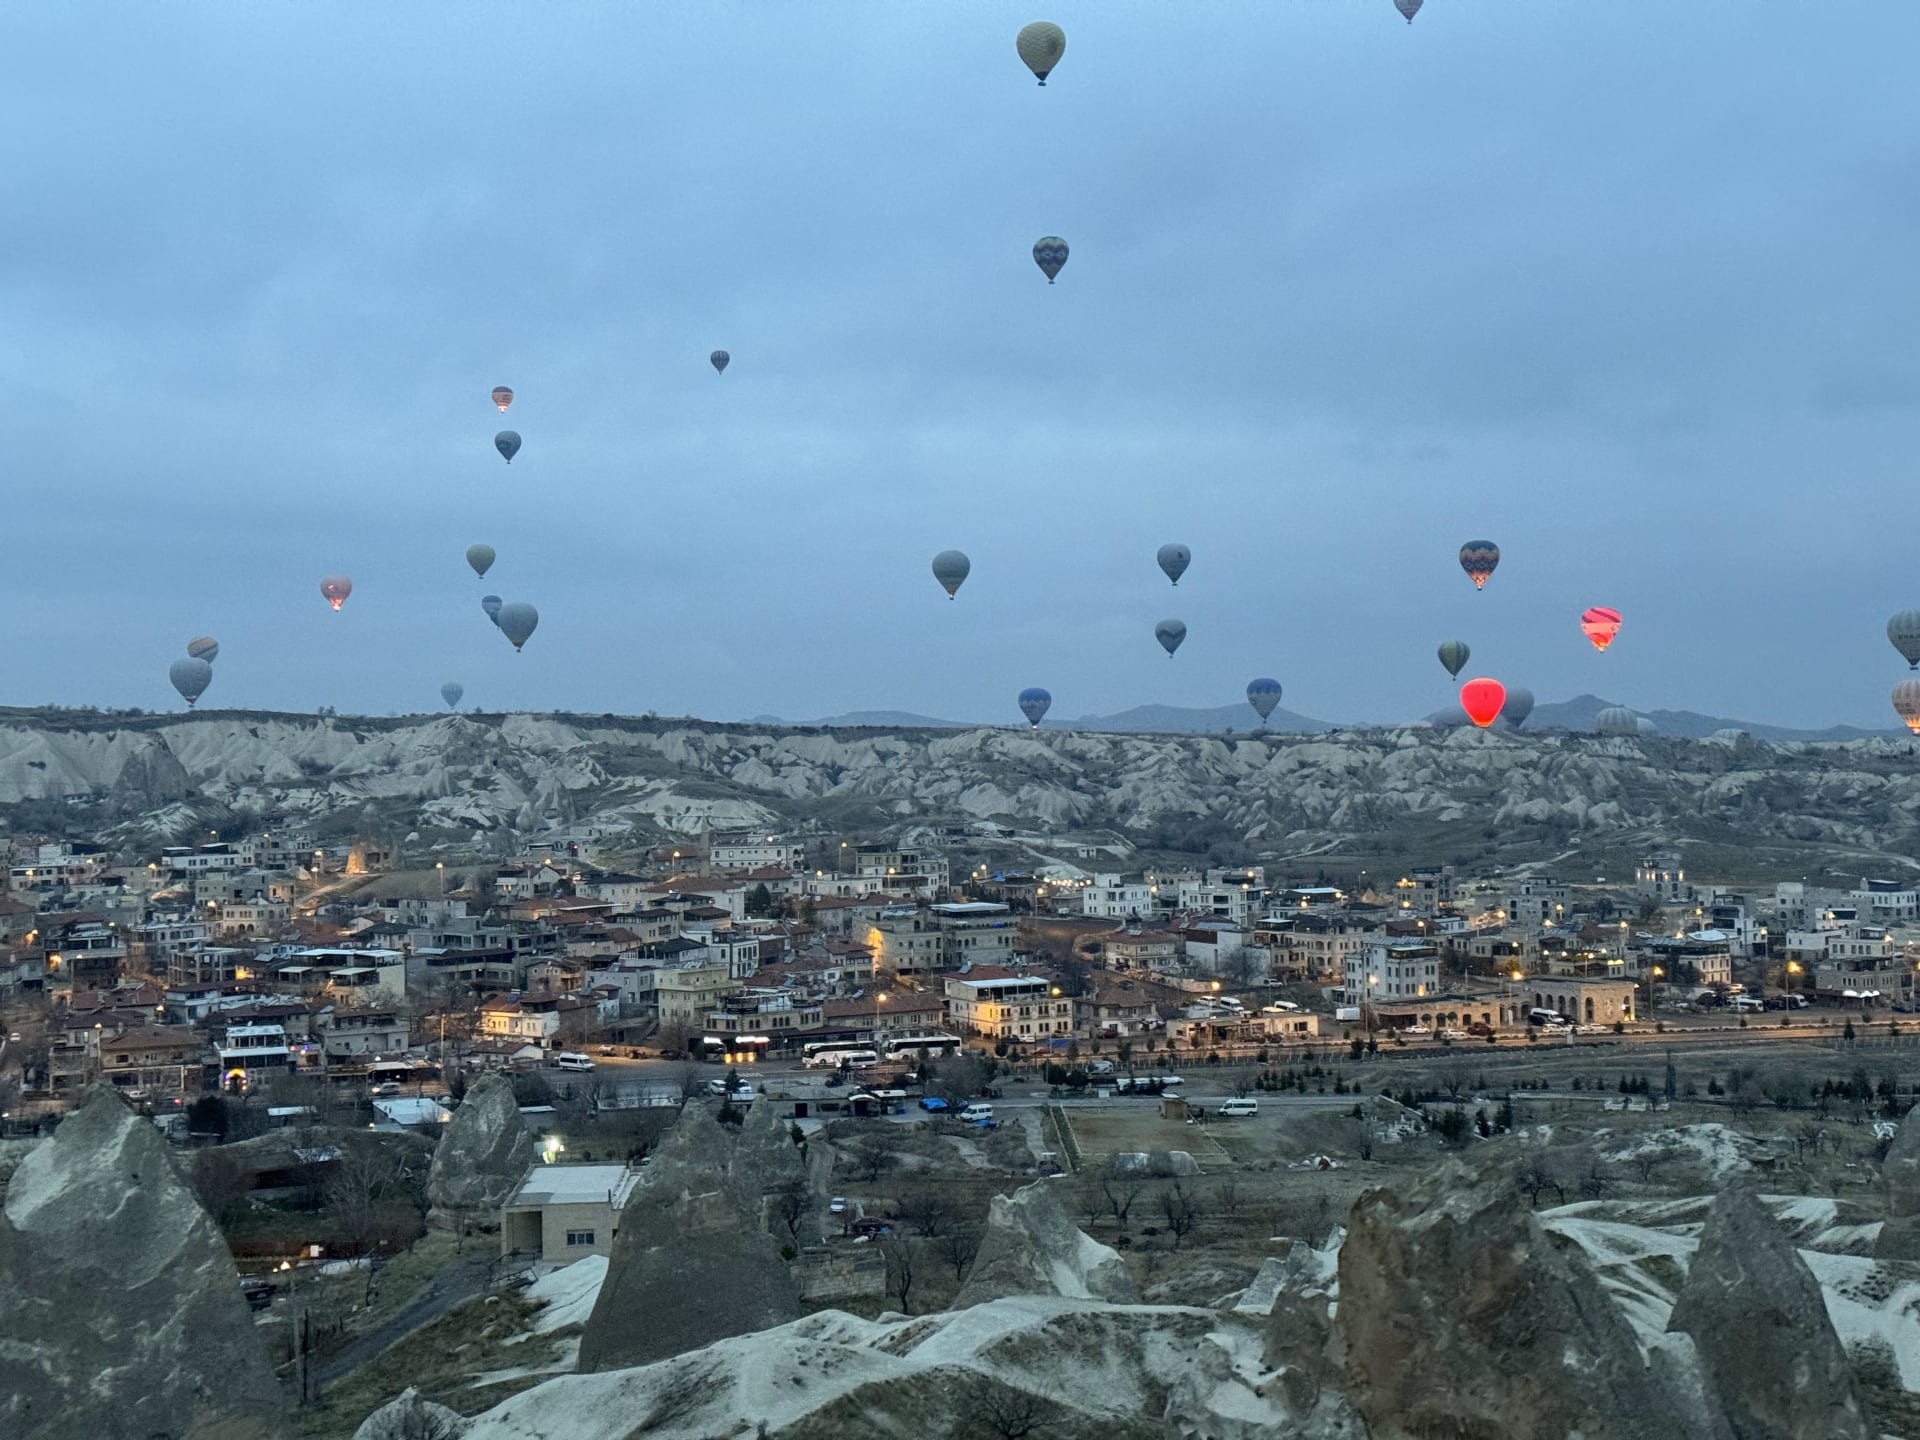 Zažít let balónem v rámci fiesty desítek dalších balónů nad Kapadokií patří k zážitkům, které by měl každý aspoň jednou za život absolvovat.